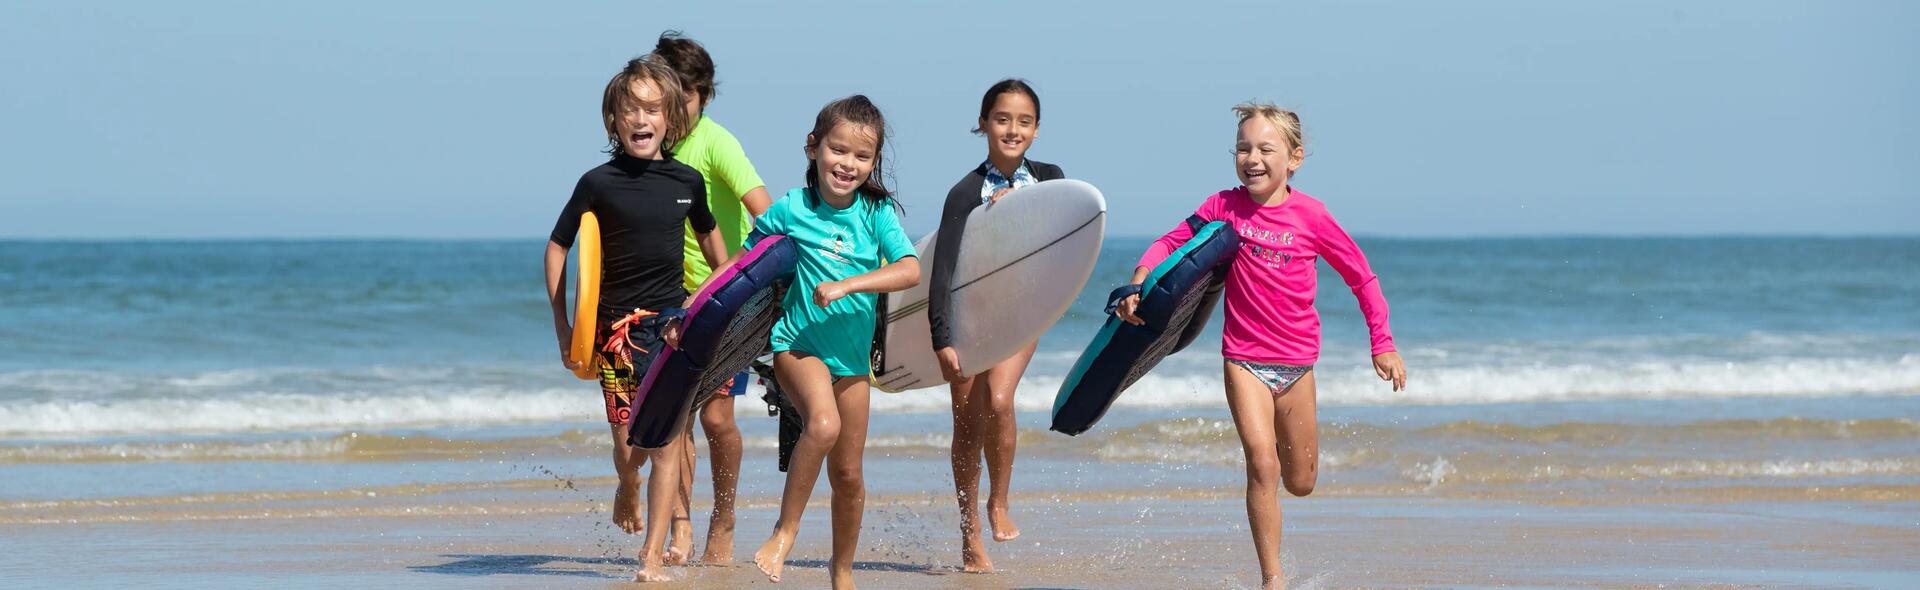 crianças na praia com t-shirt UV